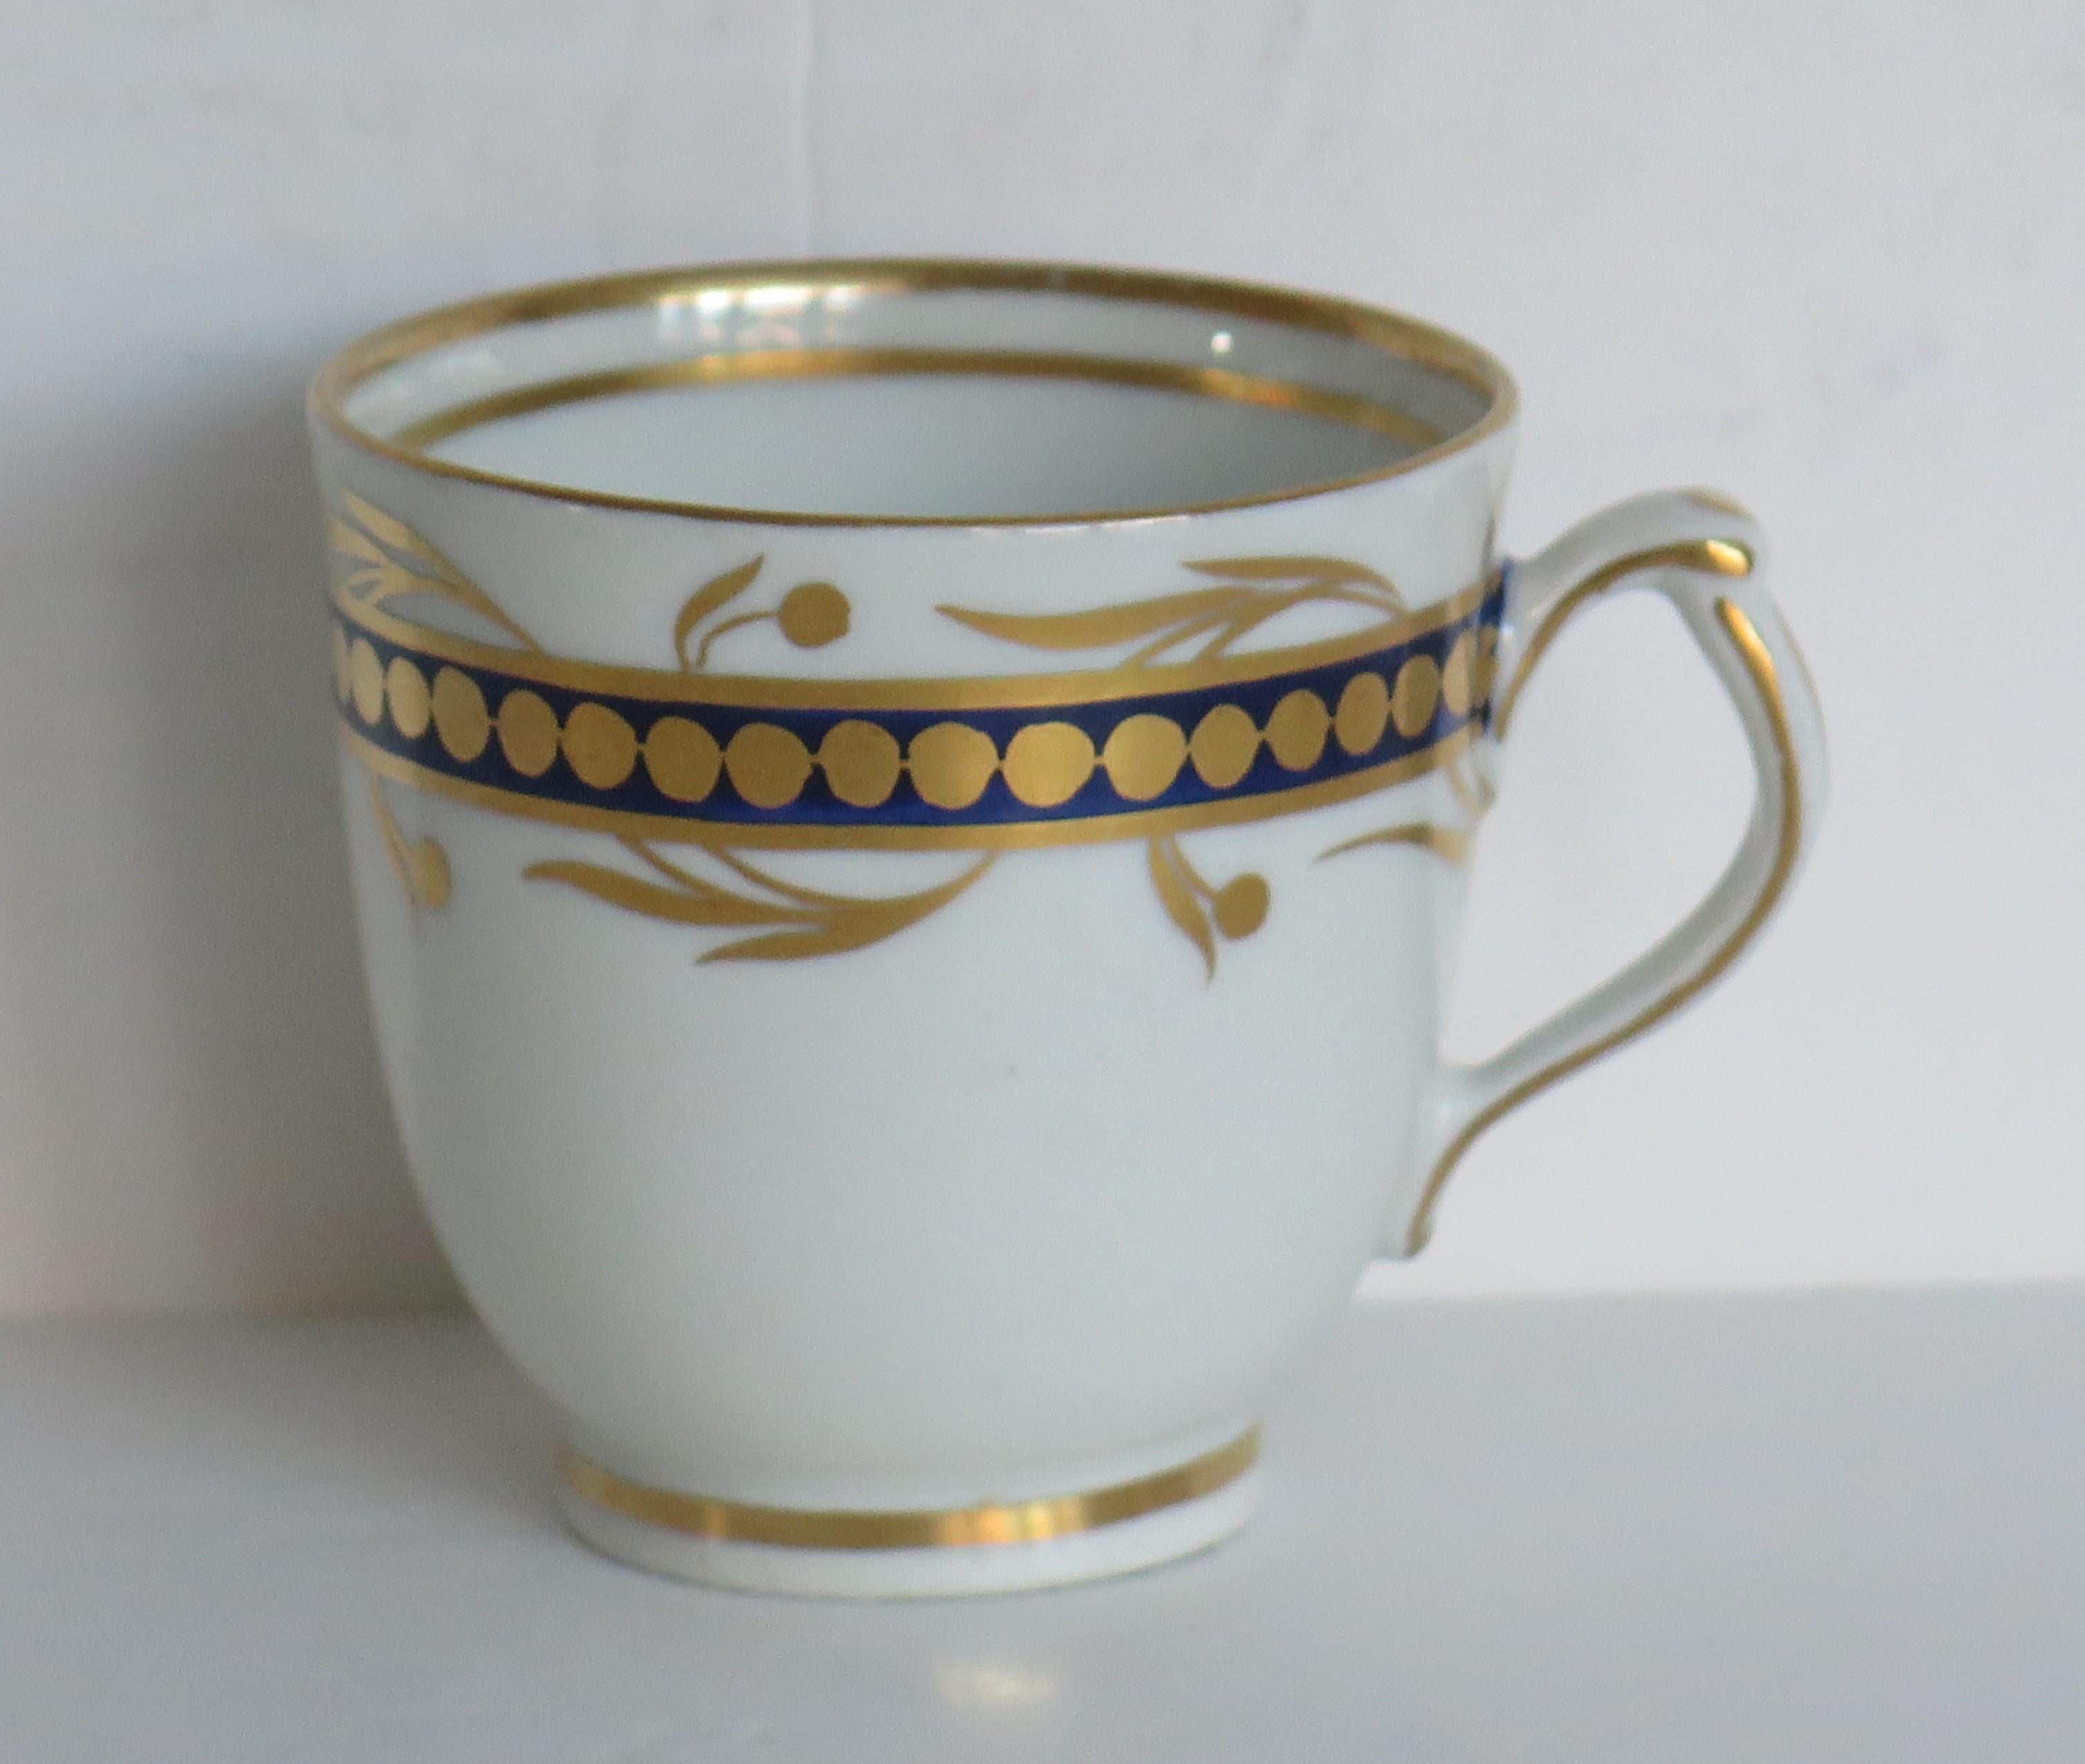 Es handelt sich um eine Kaffeetasse aus Porzellan, die einem englischen Hersteller aus Staffordshire aus dem frühen 19. Jahrhundert (George 111) zugeschrieben wird (ca. 1805-1810).

Das Stück ist auf einem niedrigen Fuß gut getöpfert und hat einen